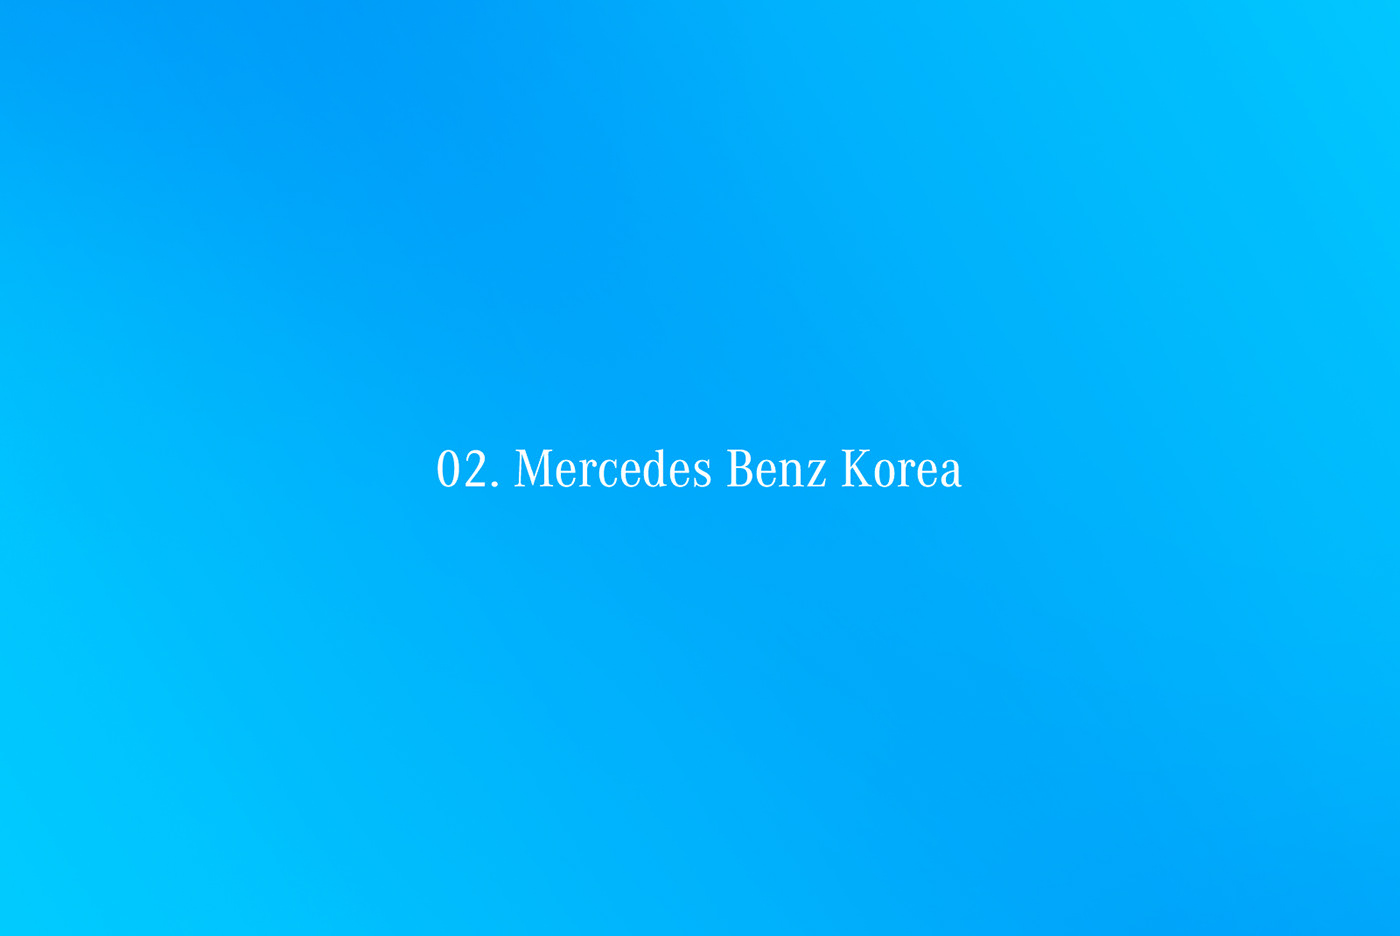 ads heineken leoburnett Mercedes Benz mercedes-benz portfolio publicisgroupe samsung members